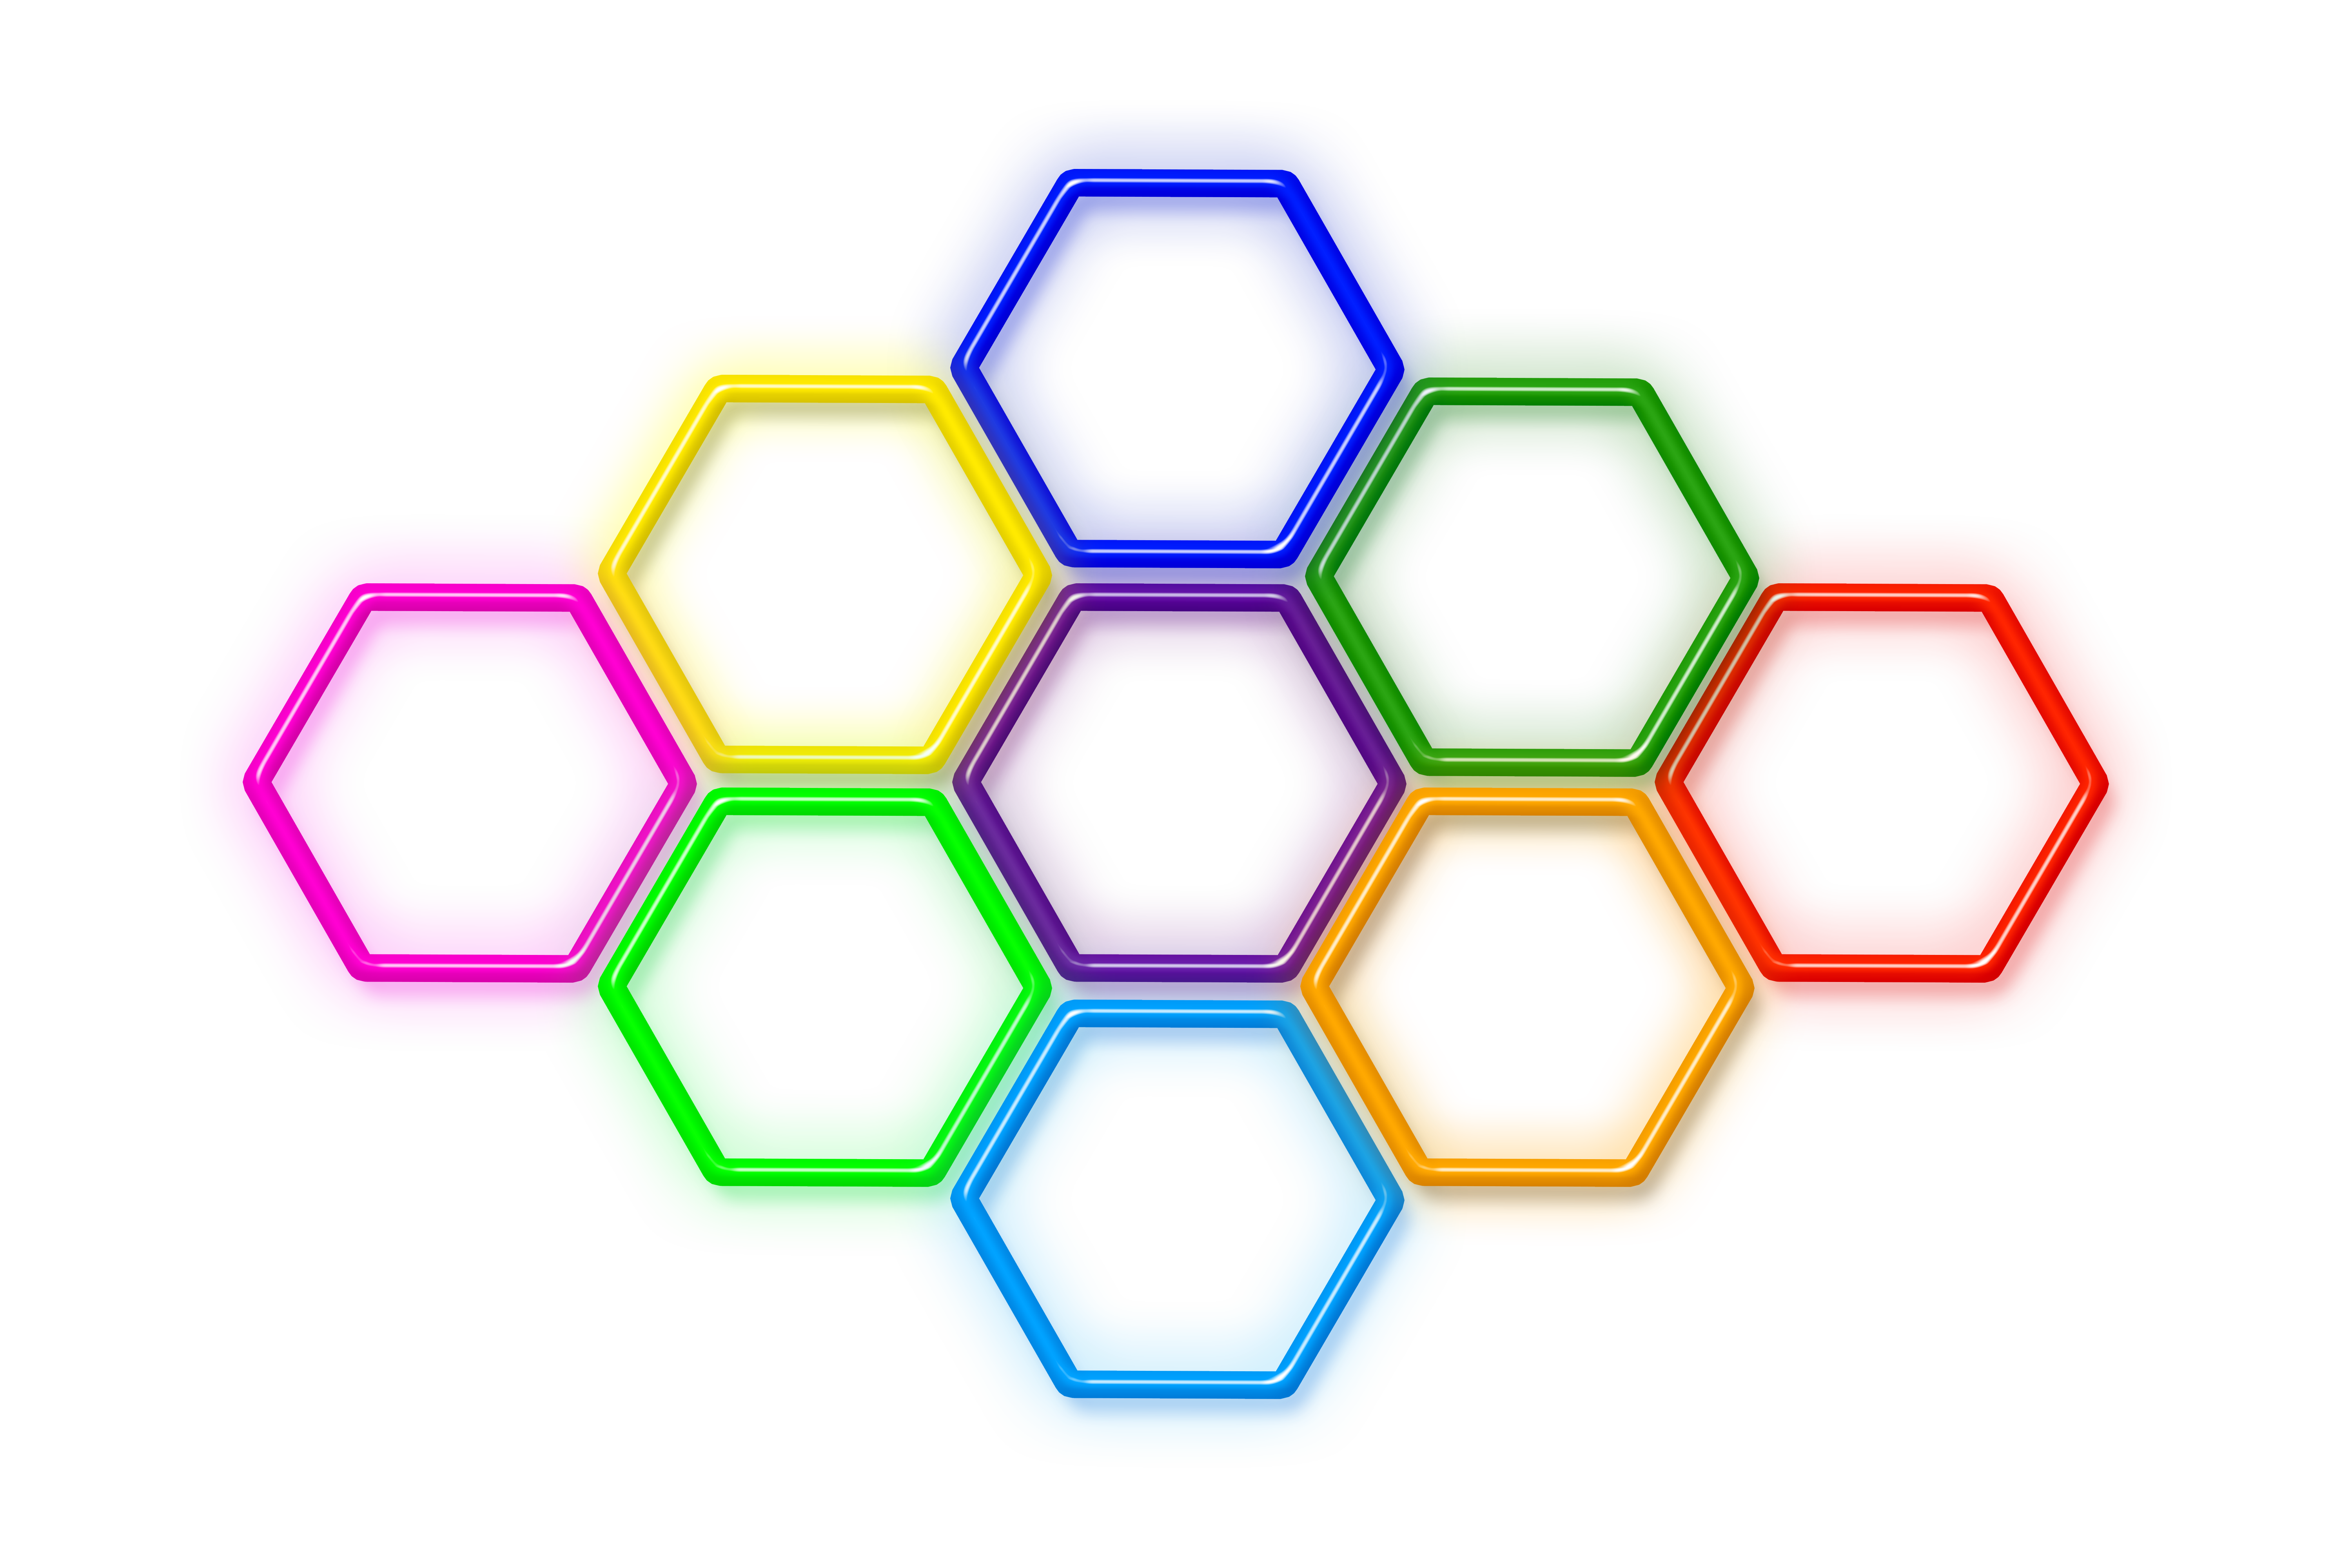 Ячейка png. Шестиугольник 5на5. Шестиугольник Гексагон. Разноцветные геометрические фигуры. Шестиугольник цветной.